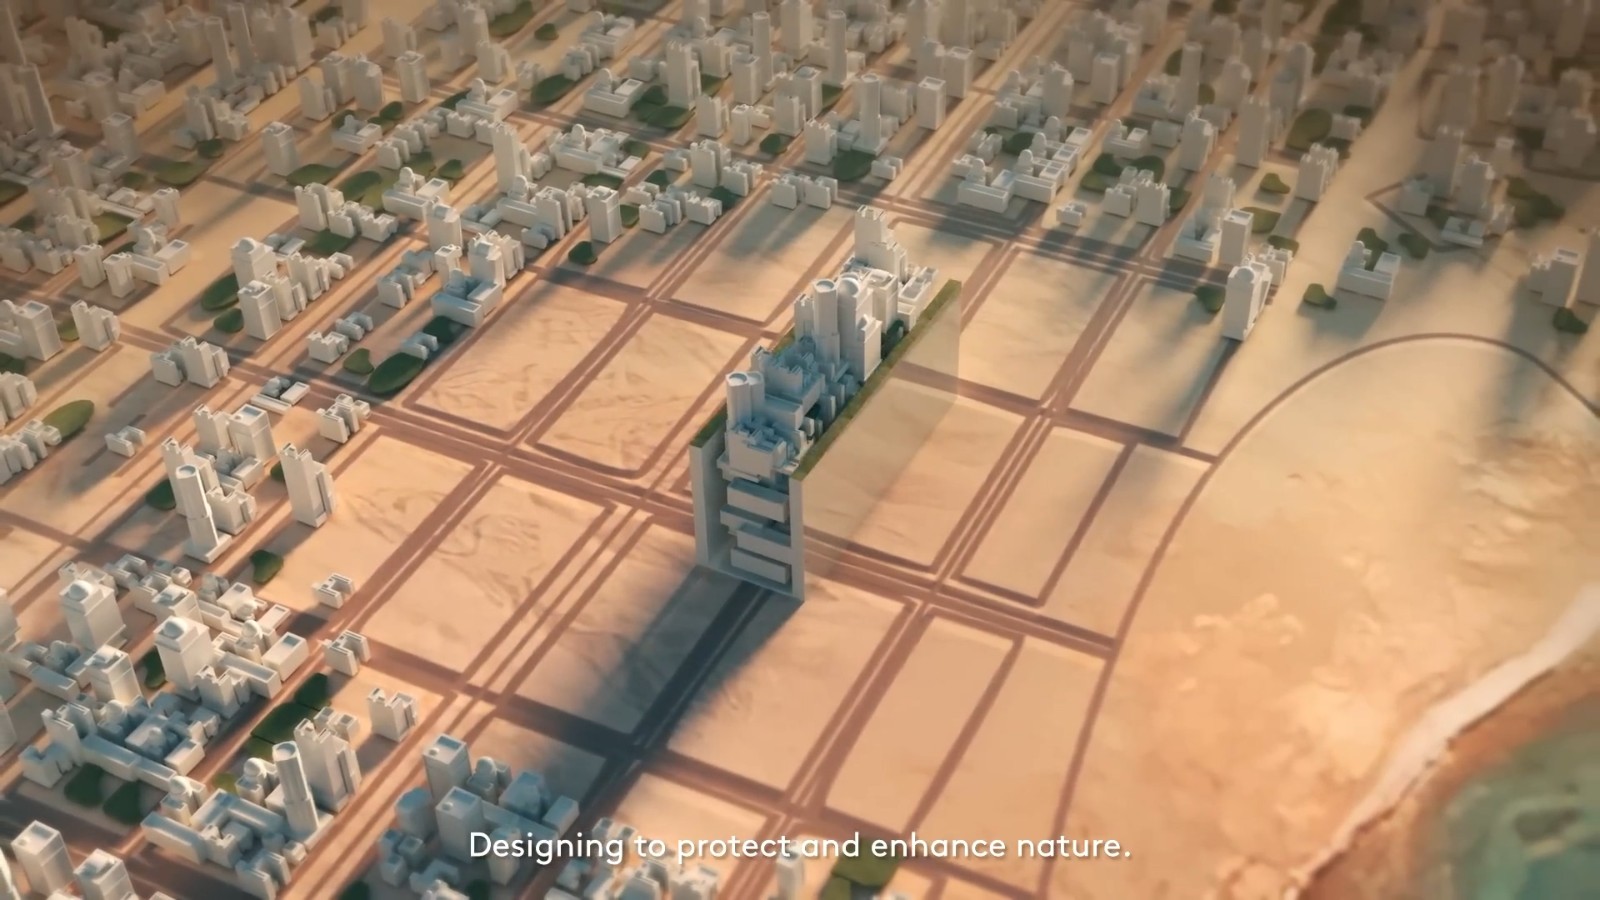 沙特公布打造智能线性城市Line计划截图